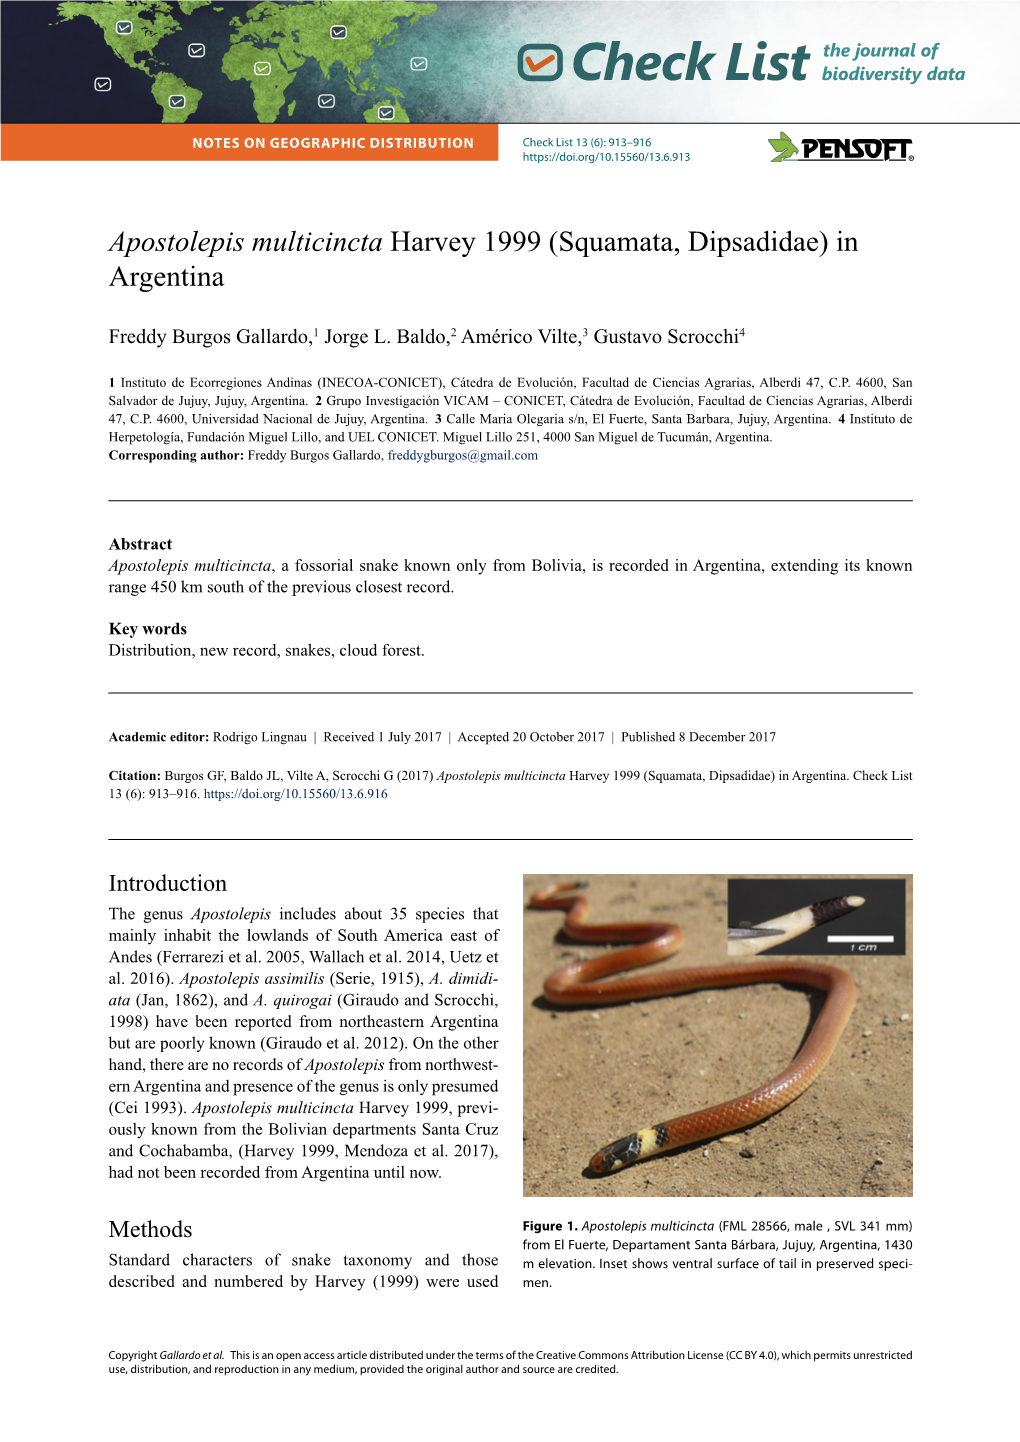 Apostolepis Multicincta Harvey 1999 (Squamata, Dipsadidae) in Argentina